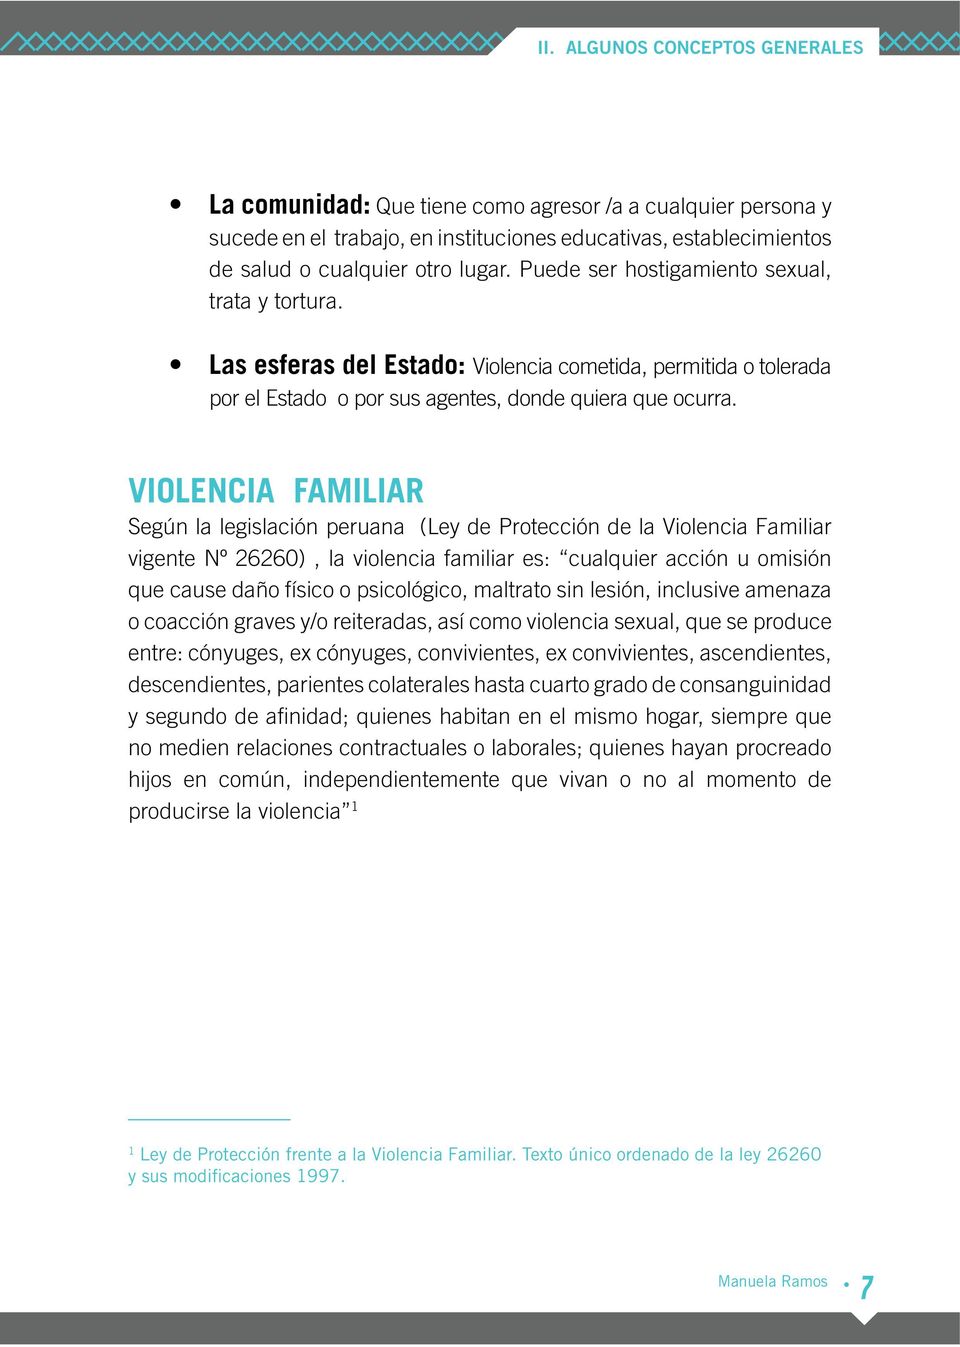 VIOLENCIA FAMILIAR Según la legislación peruana (Ley de Protección de la Violencia Familiar vigente Nº 26260), la violencia familiar es: cualquier acción u omisión que cause daño físico o